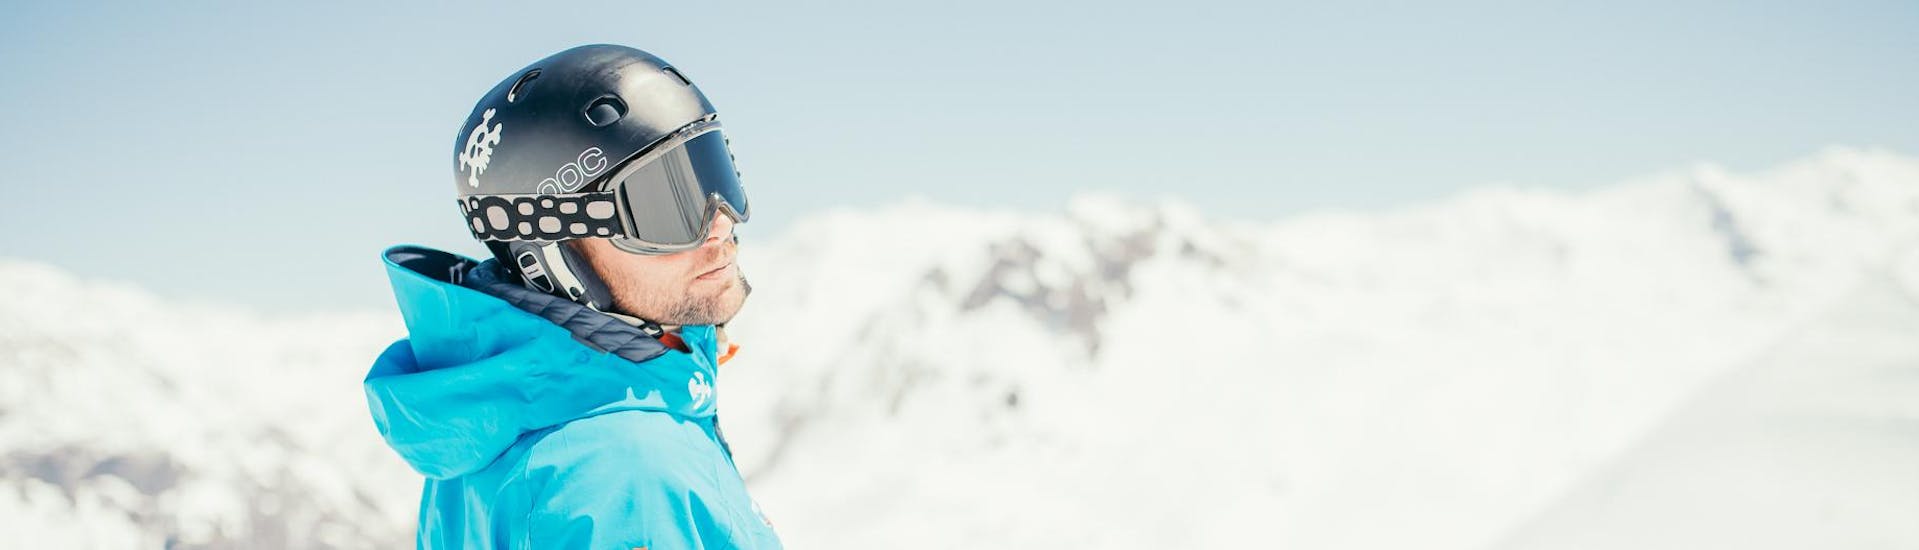 Eine Person nimmt am Privatkurs im Snowboarden teil - im Februar bei unserem Partner Starski Grand Bornand.